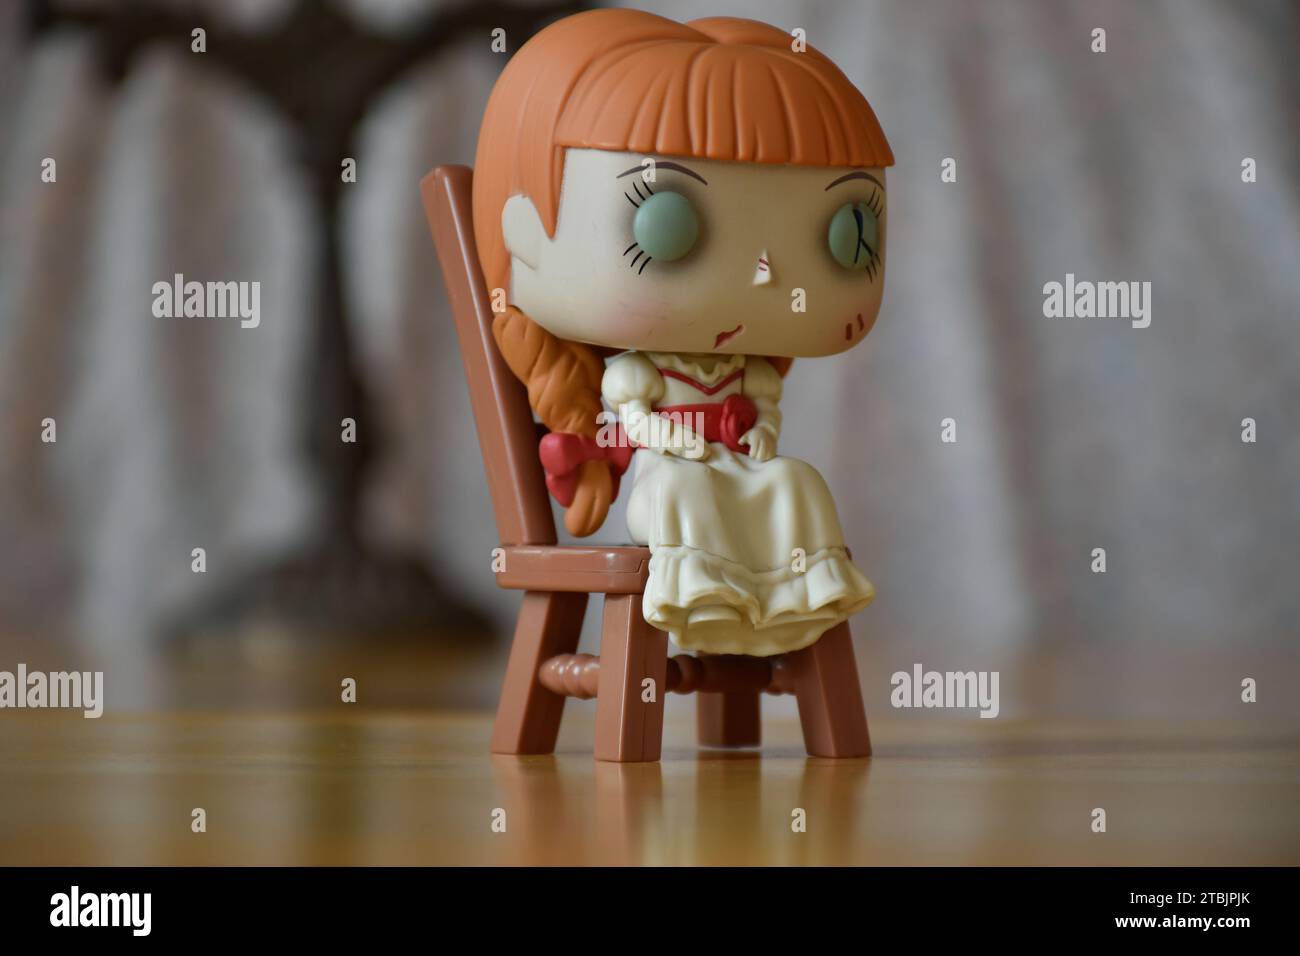 Funko Pop figurine d'action de poupée hantée Annabelle des films d'horreur surnaturels évoquant. Intérieur vintage, pièce sombre, vieux chandelier. Banque D'Images